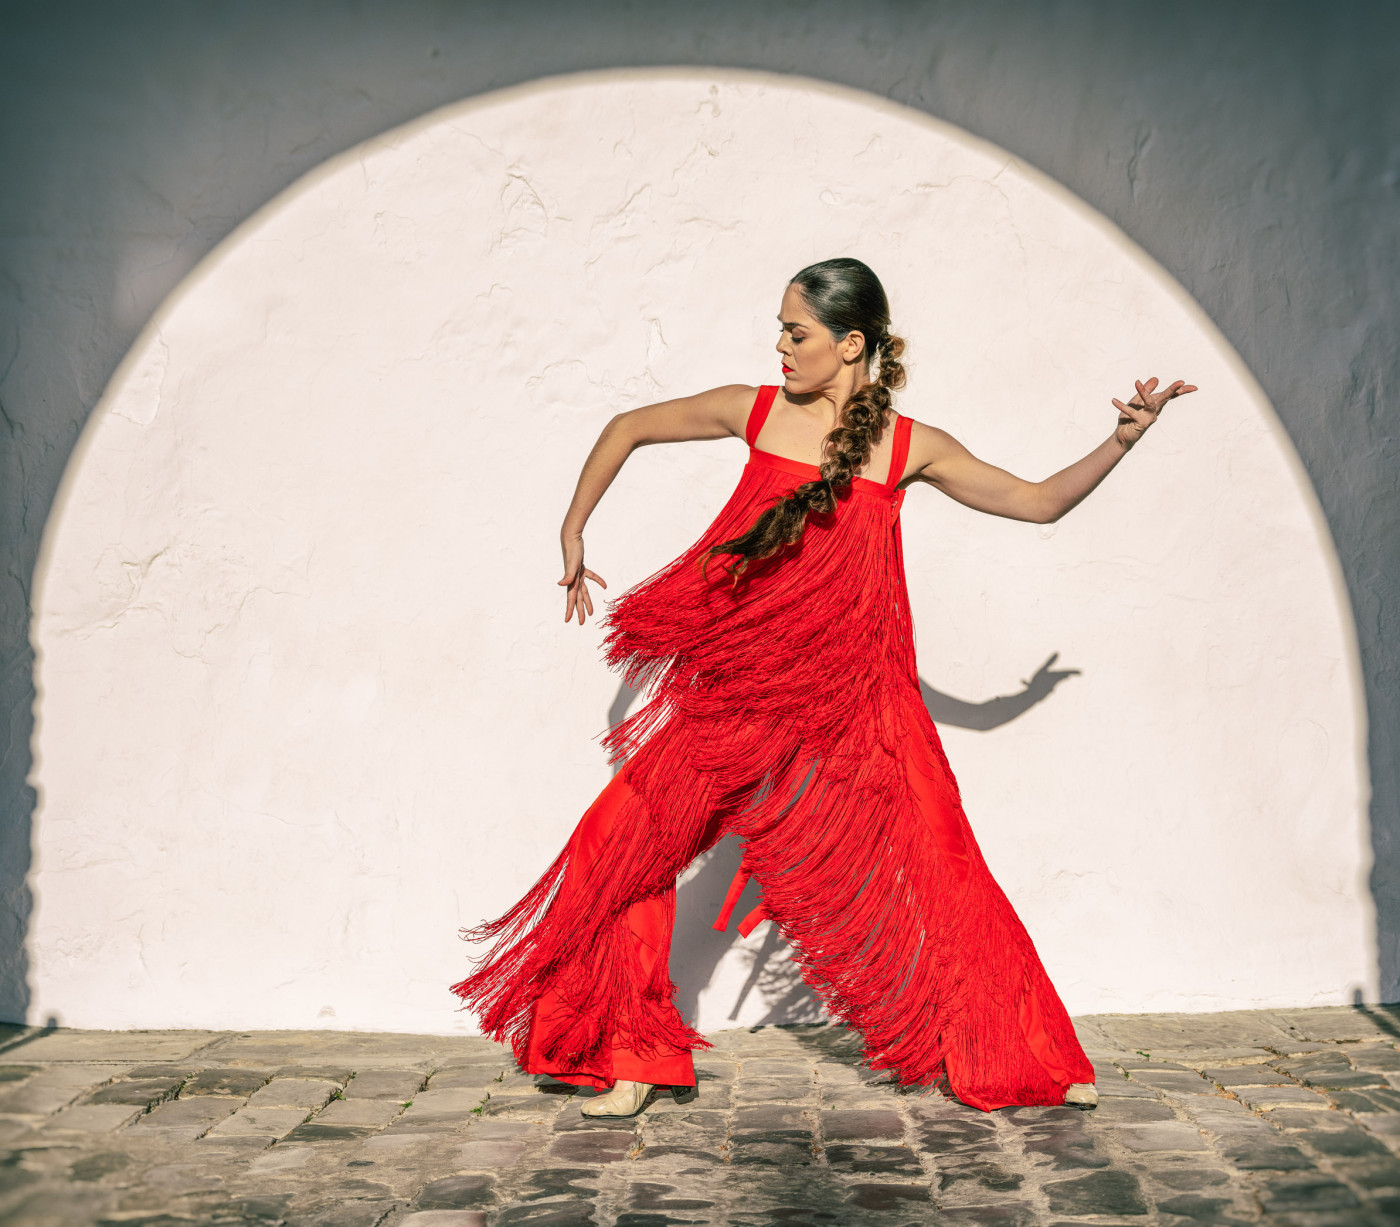 Passione spagnola e flamenca a "Las Estrellas"